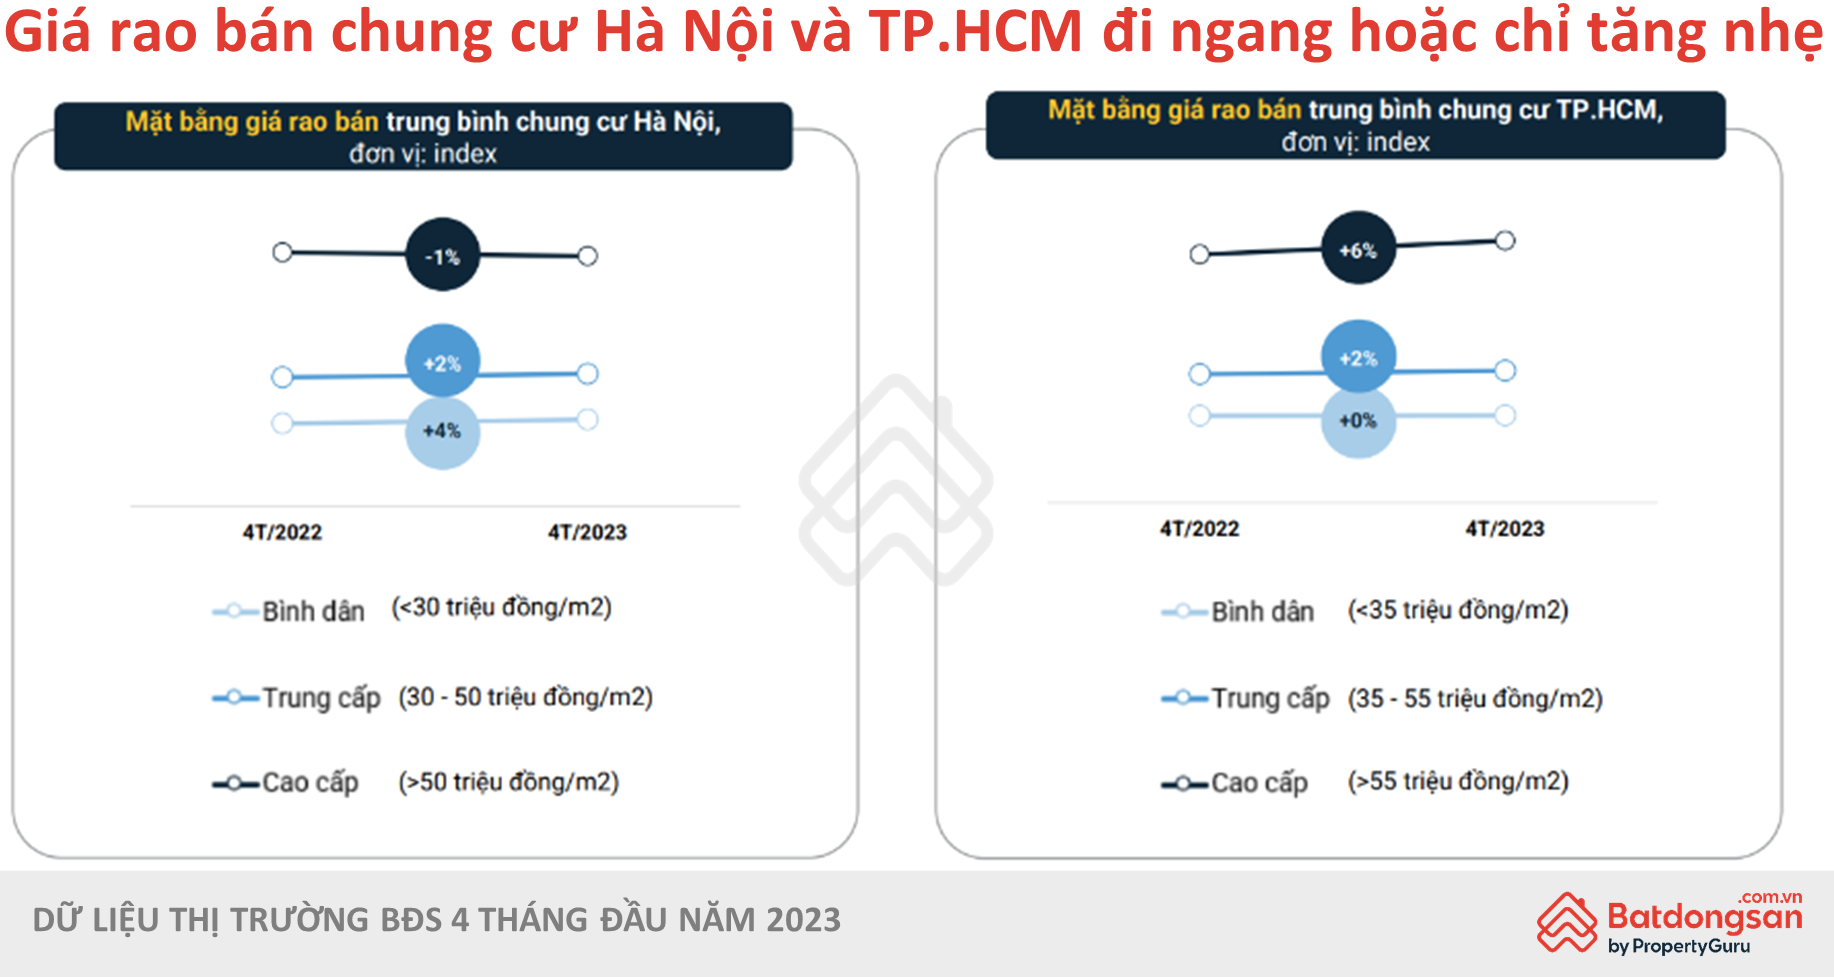 
Giá bán chung cư ở Hà Nội và TP Hồ Chí Minh đang có xu hướng đi ngang. Nguồn: Batdongsan.com.vn
